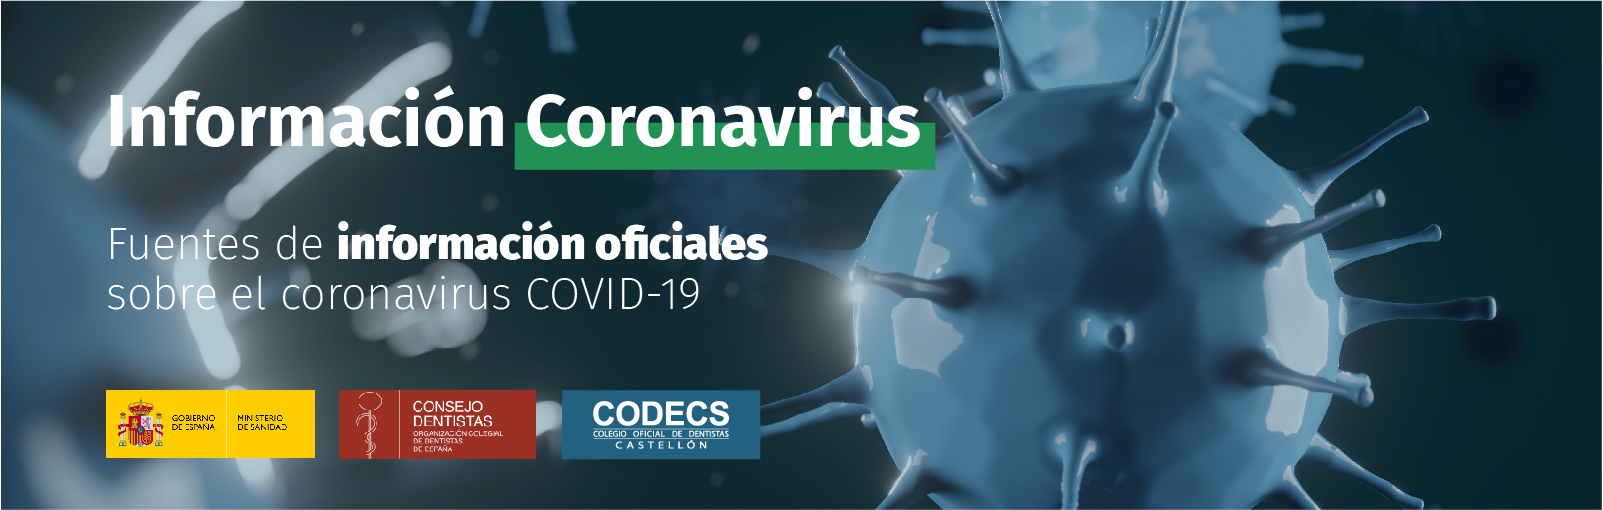 Coronavirus-02-1